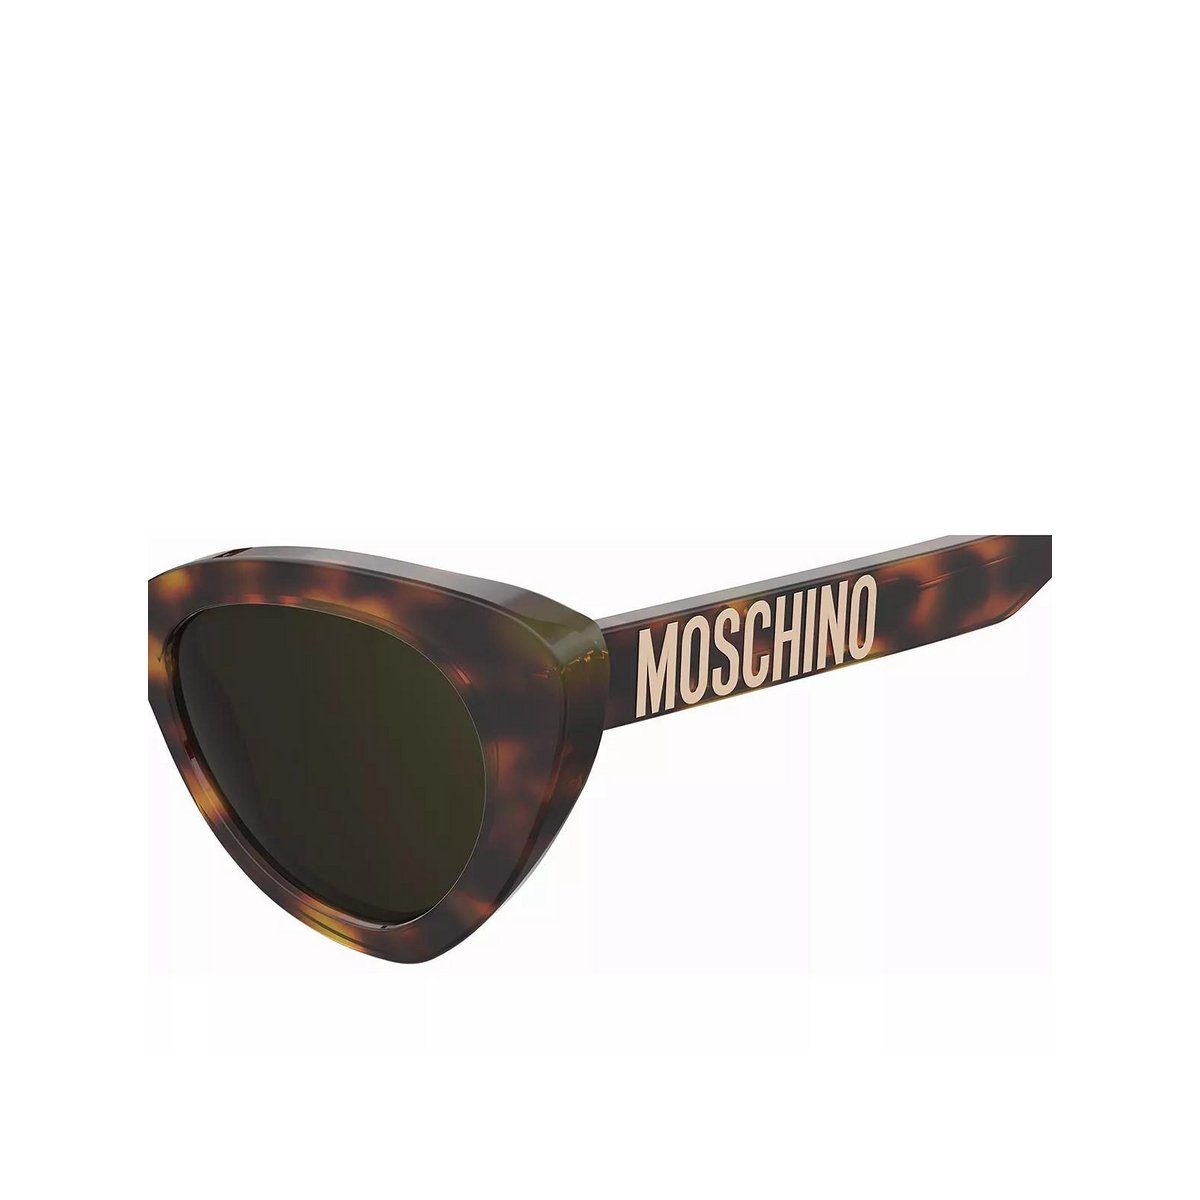 (1-St) Moschino braun Sonnenbrille